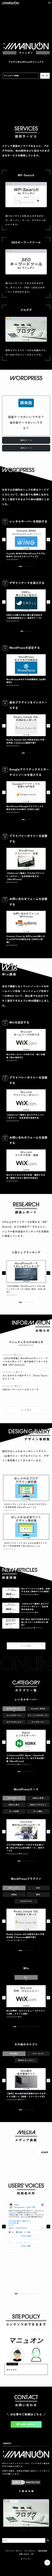 マニュオン | WordPress講座＆テーマ選び方ガイド